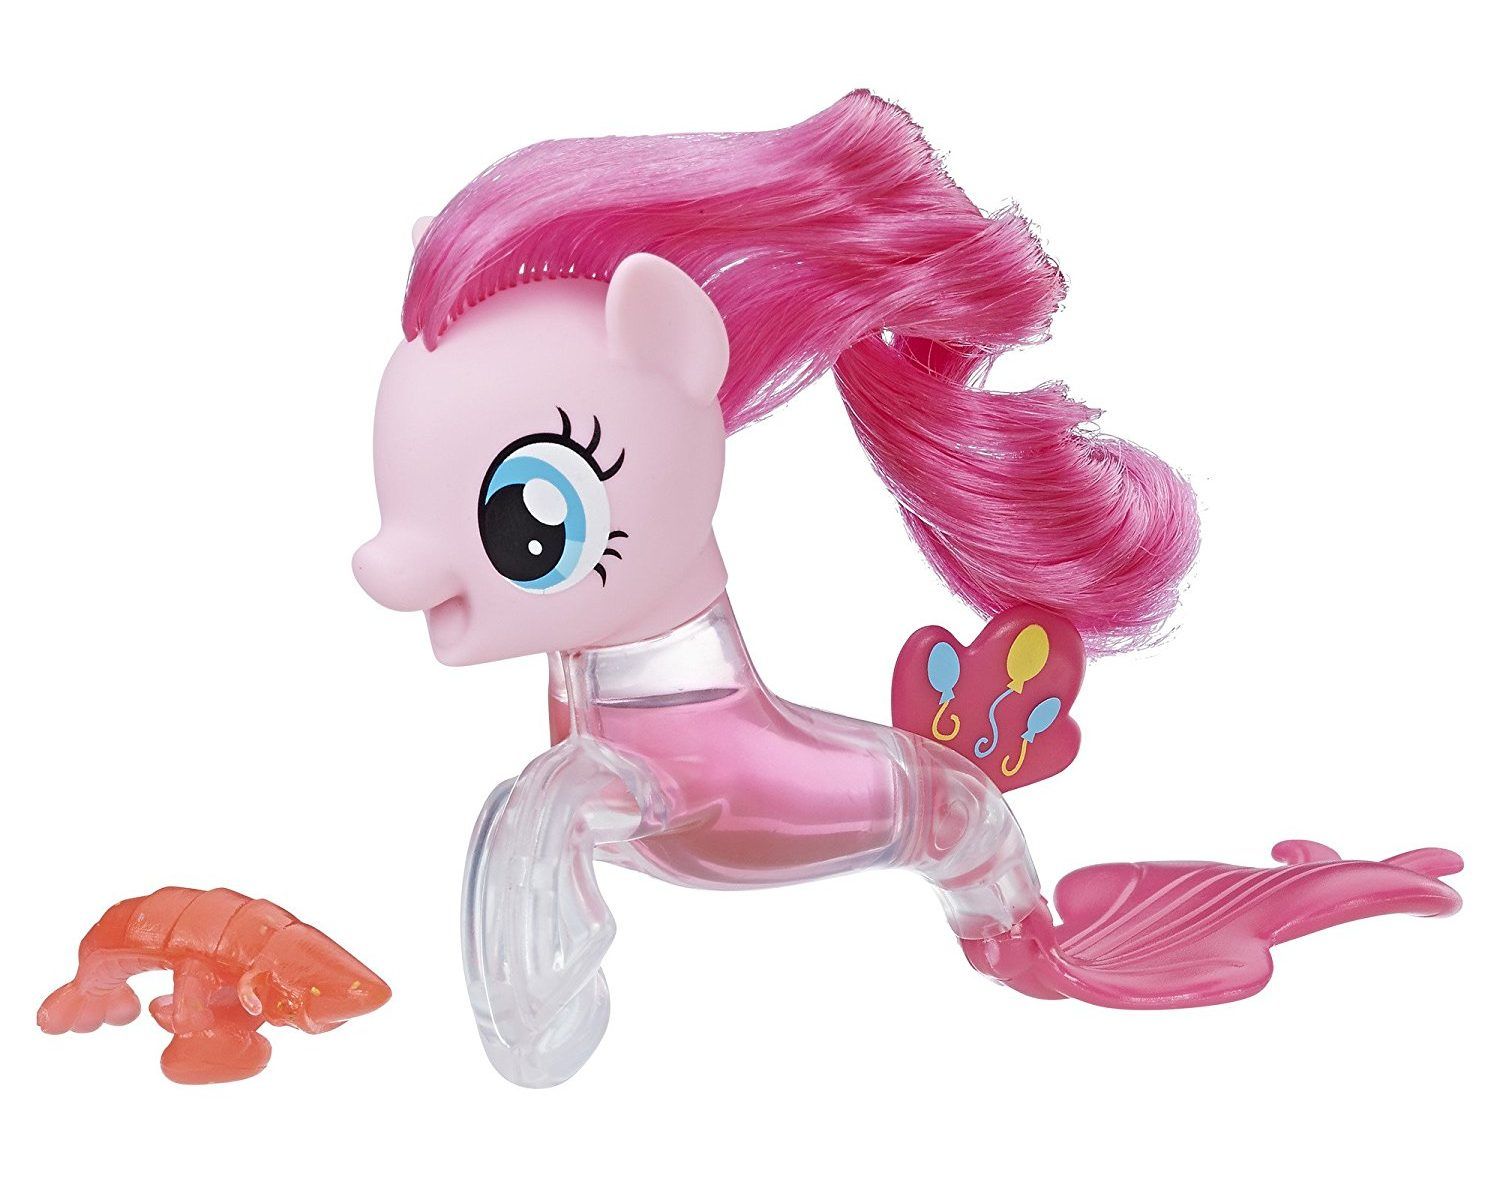 Игрушка май литл пони новые. My little Pony Toys Пинки Пай. Пинки Пай Хасбро. Игрушка Hasbro MLP фигурки "пони-подружки". Пони Хасбро Пинки Пай.